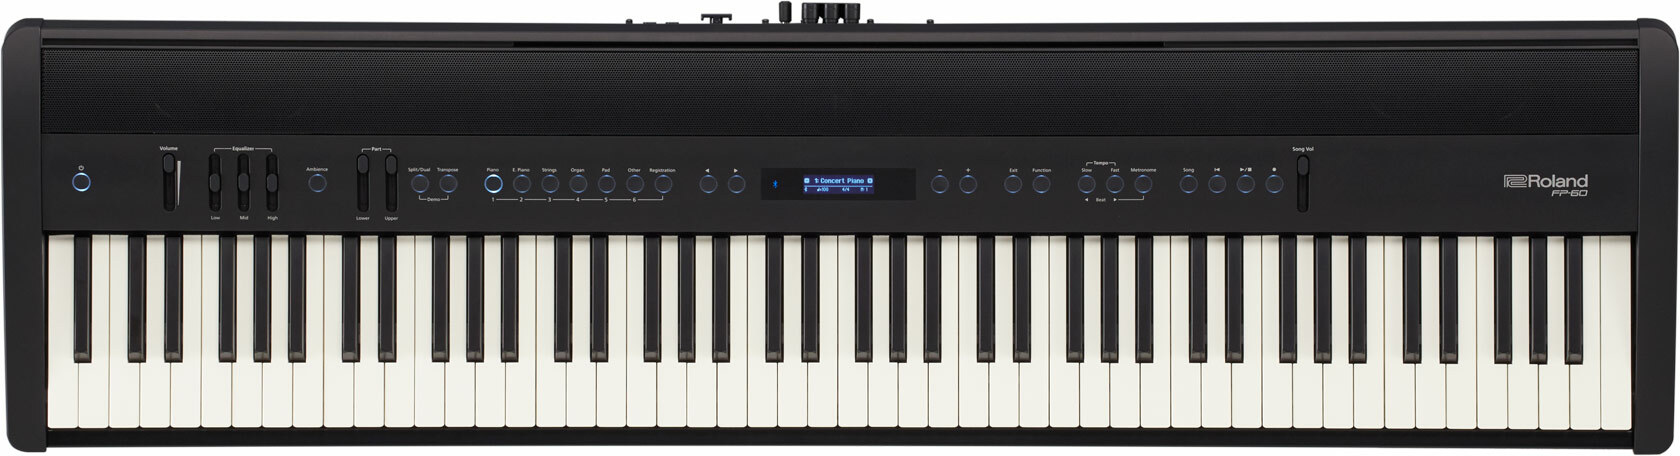 Roland Fp-60 - Noir - Portable digital piano - Main picture